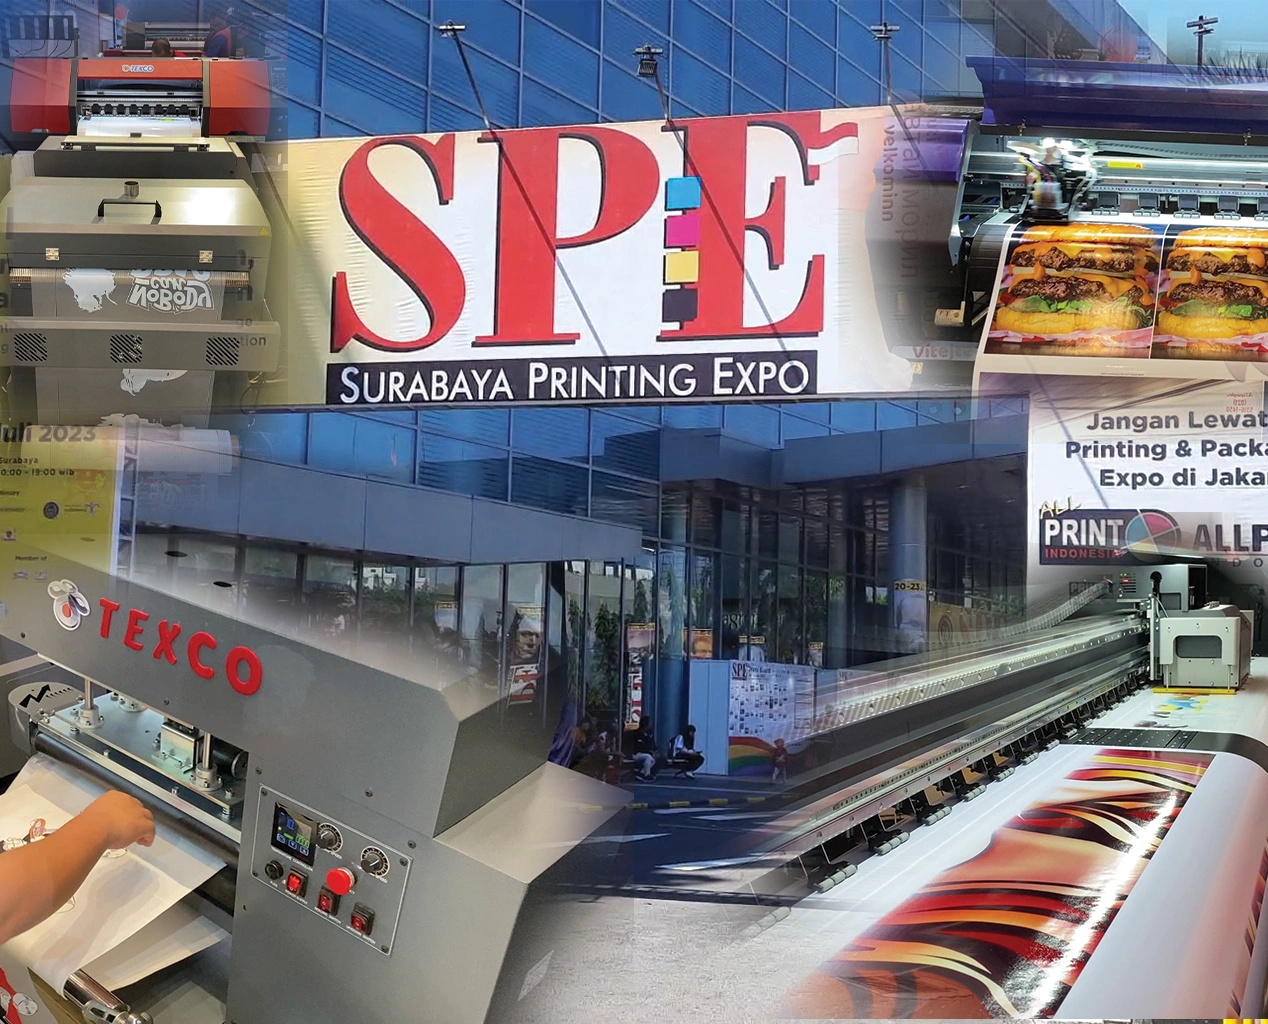 Mesin-Mesin Printer Digital Di Surabaya Printing Expo Dengan Berbagai Macam Jenis Dan Fungsi.